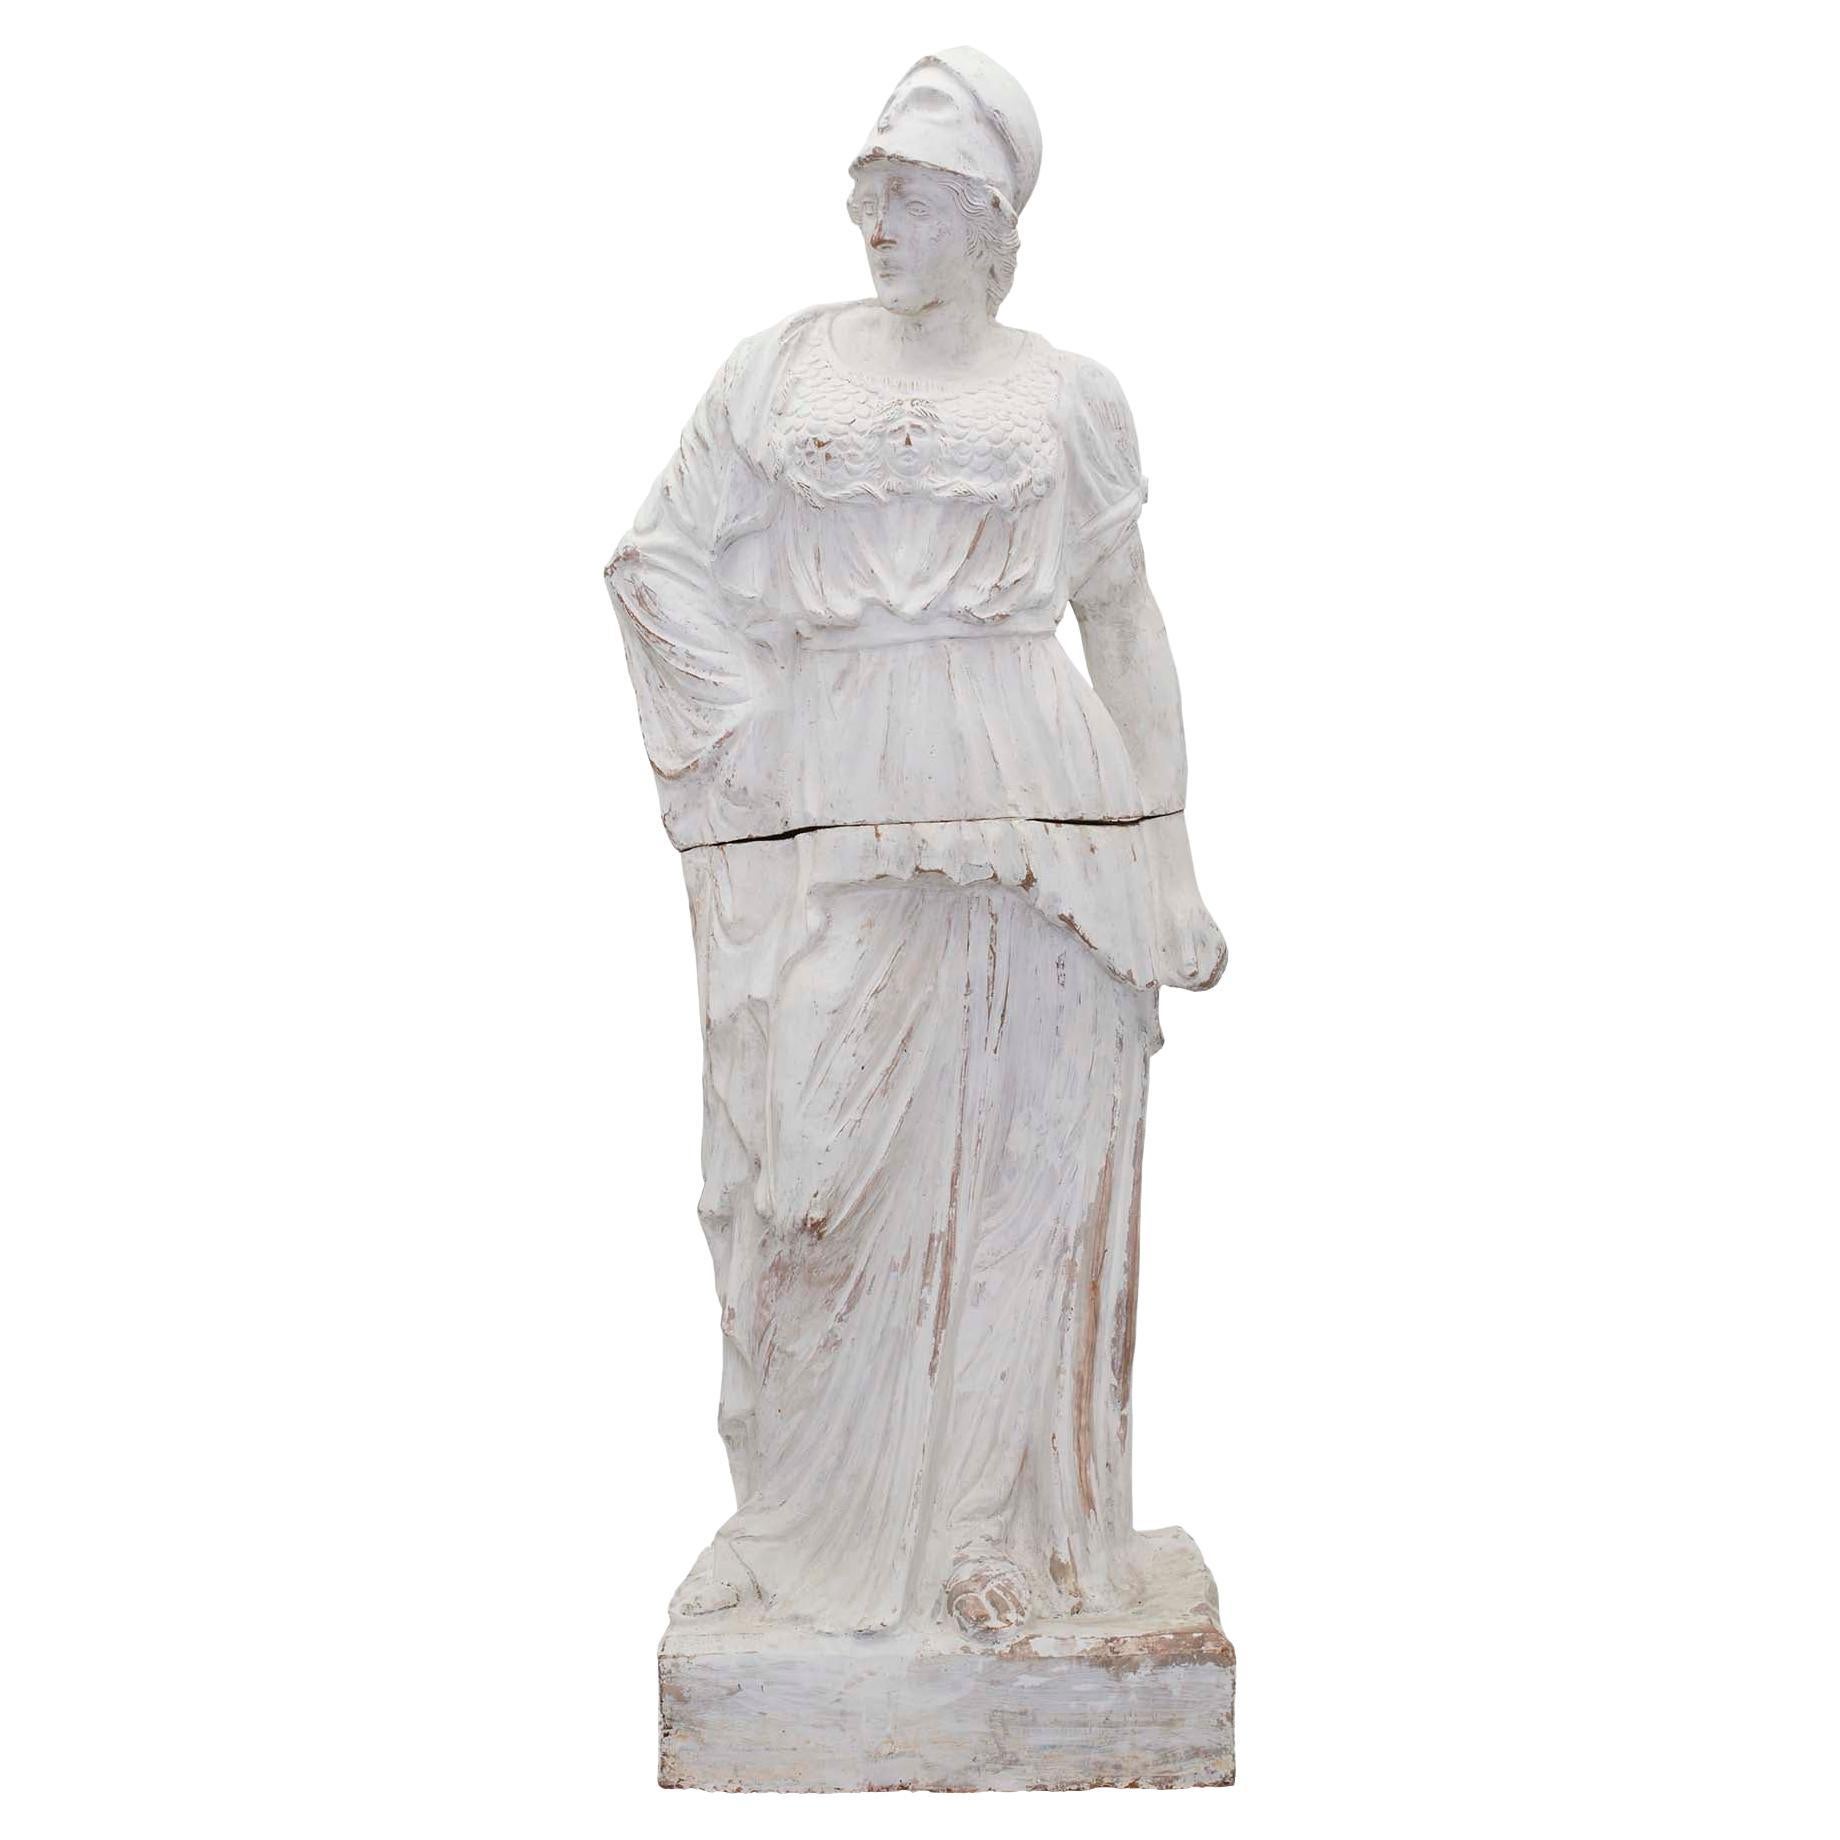 Patinierte Terrakotta-Statue einer Jungfrau aus dem 19. Jahrhundert